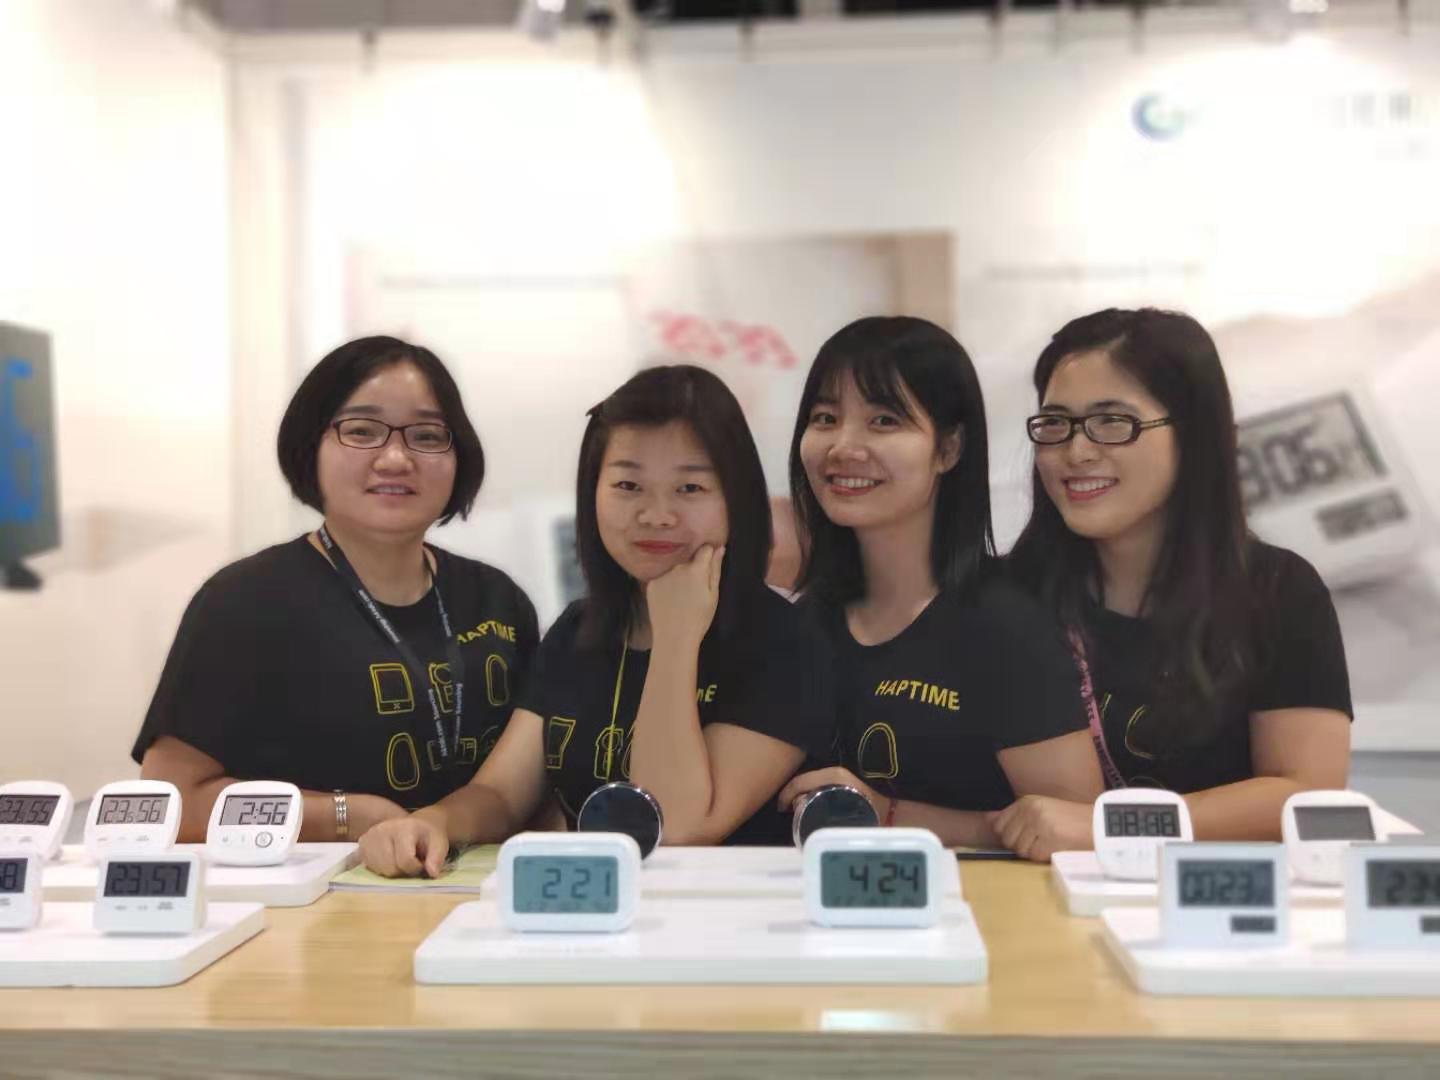 Digital Alarm Clock - 2019 Oct HK Fair